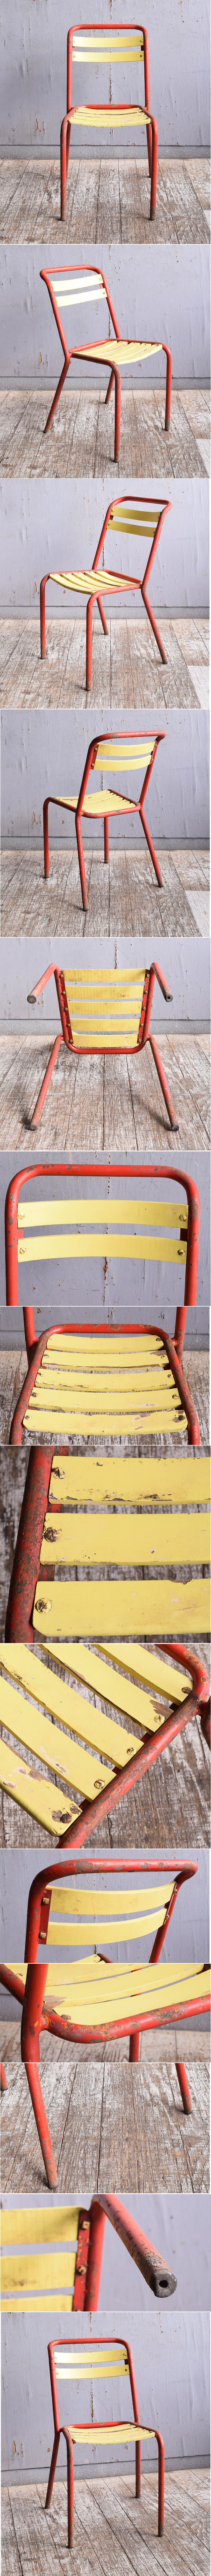 フレンチ アンティーク スタッキング ガーデンチェア 椅子 11554